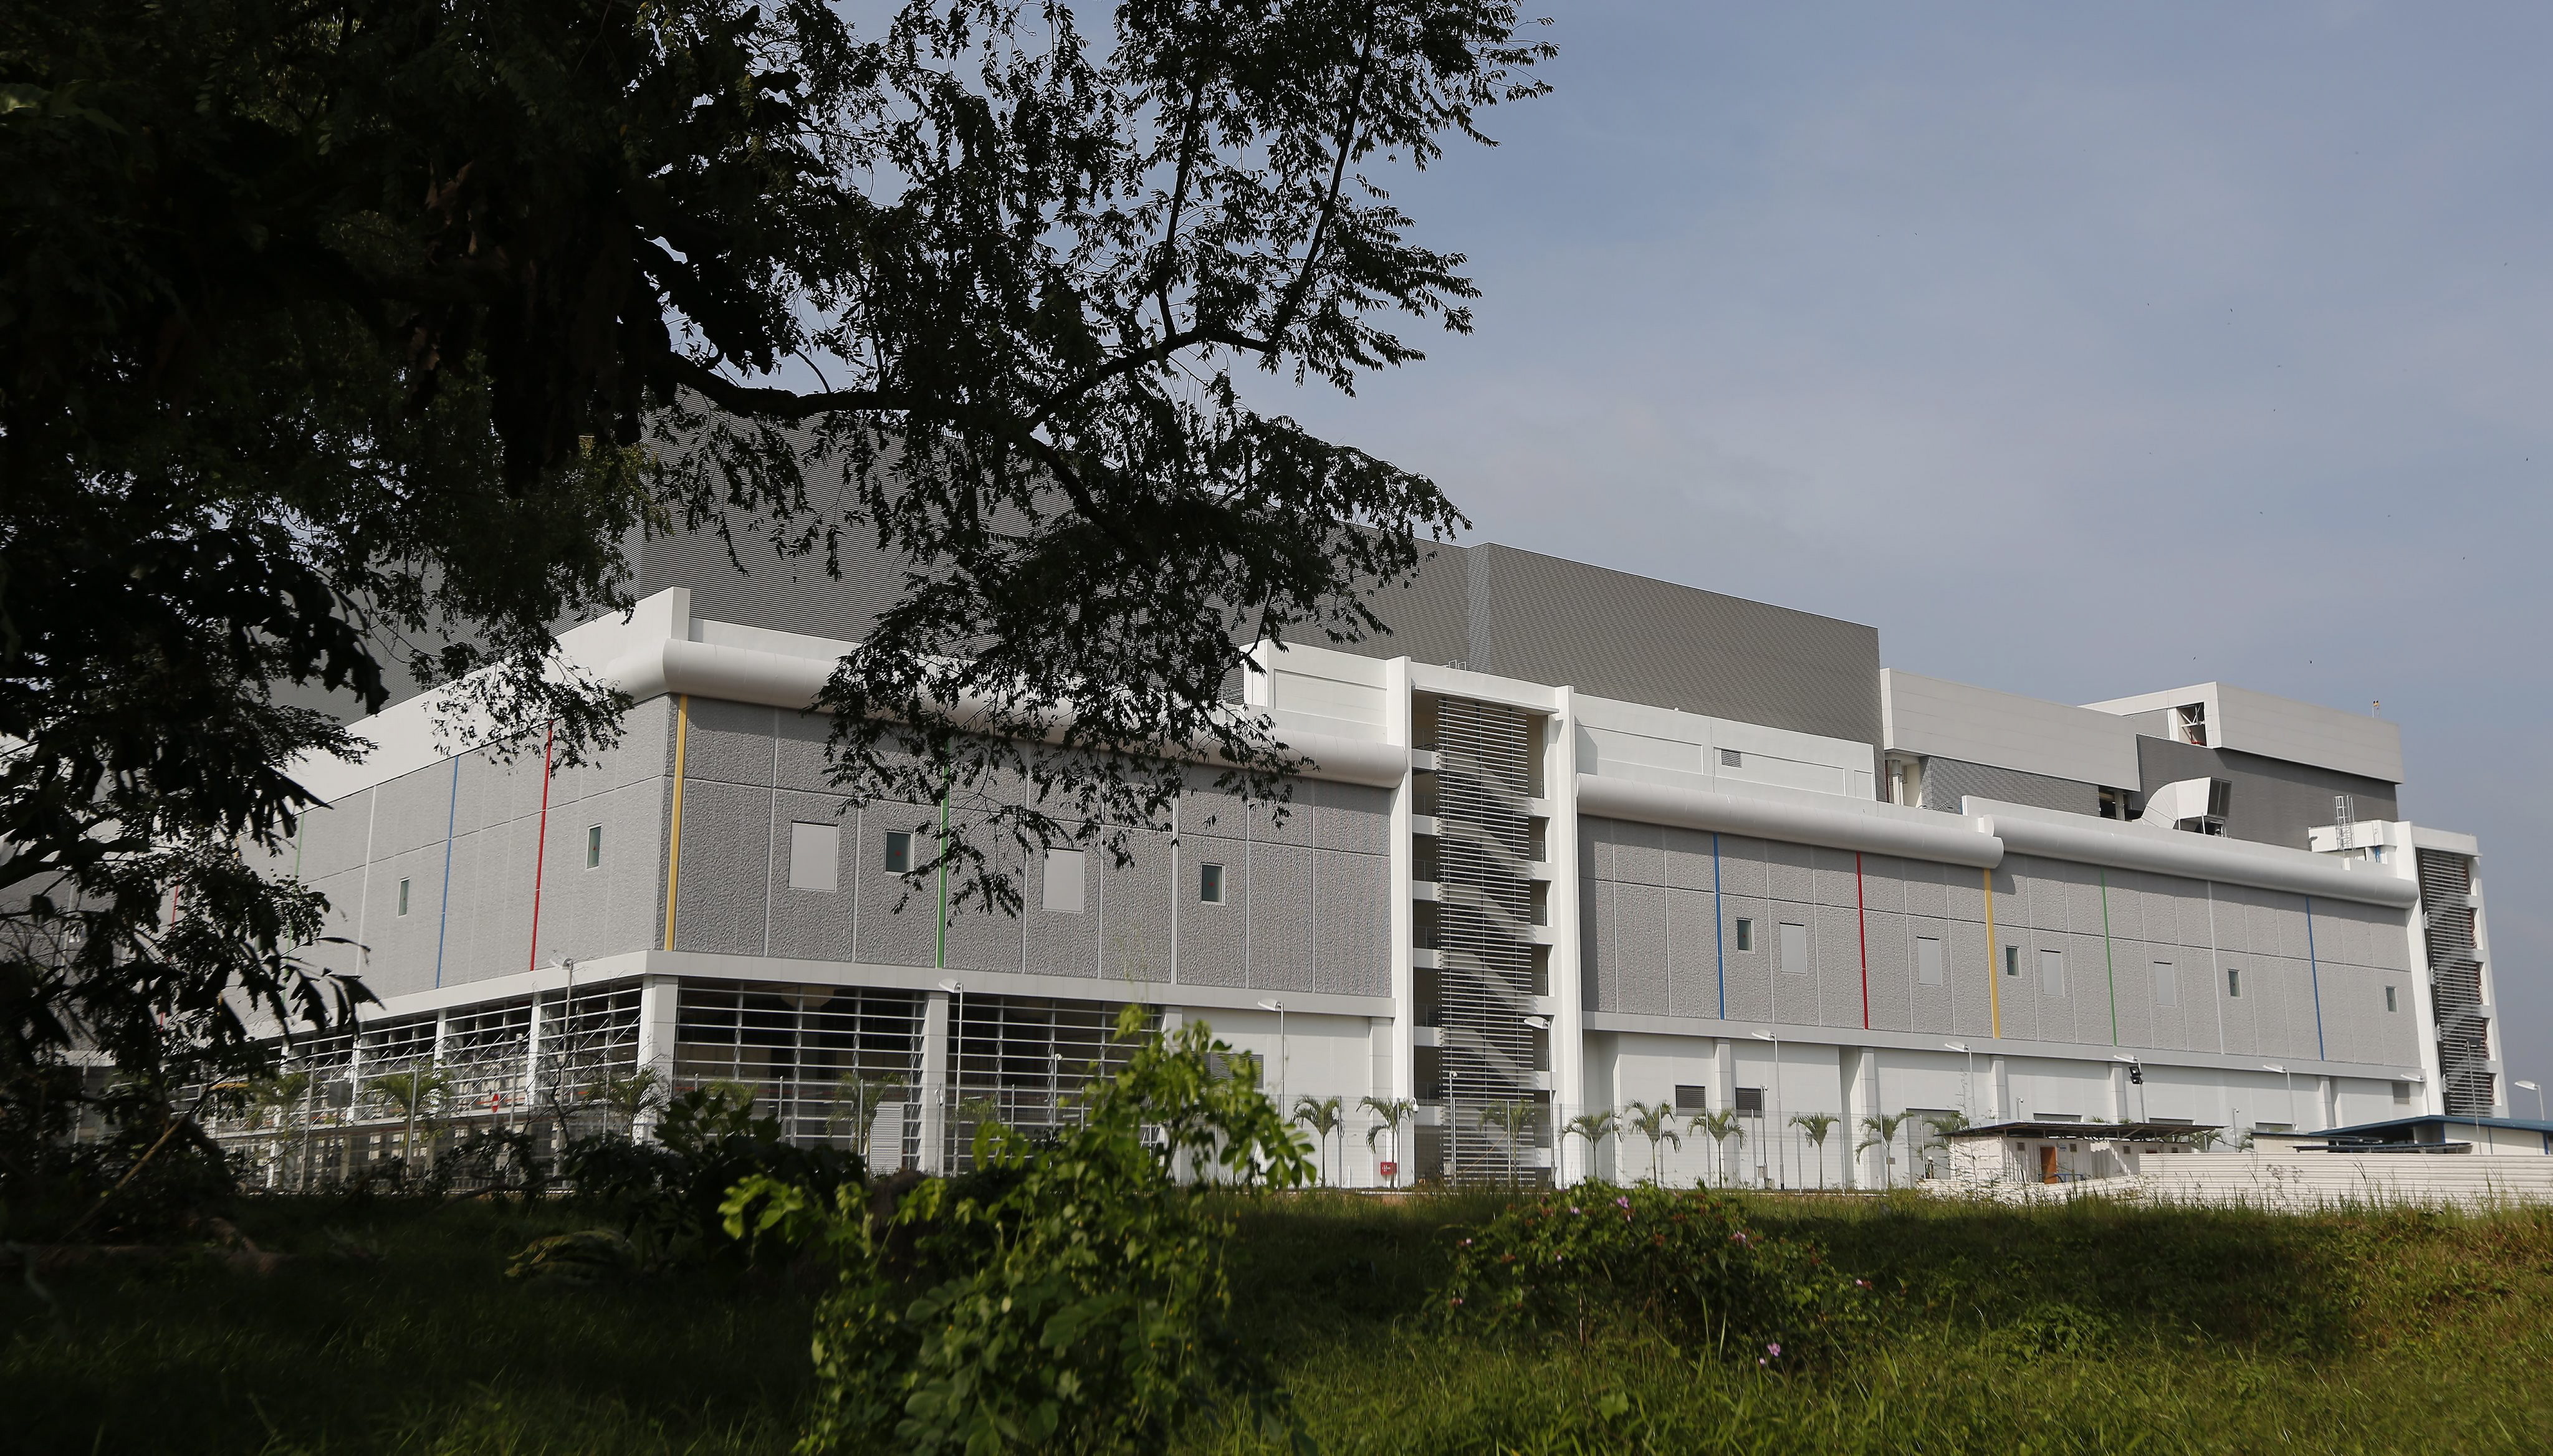 Außenansicht eines Datenzentrums von Google in Singapur | picture alliance / dpa